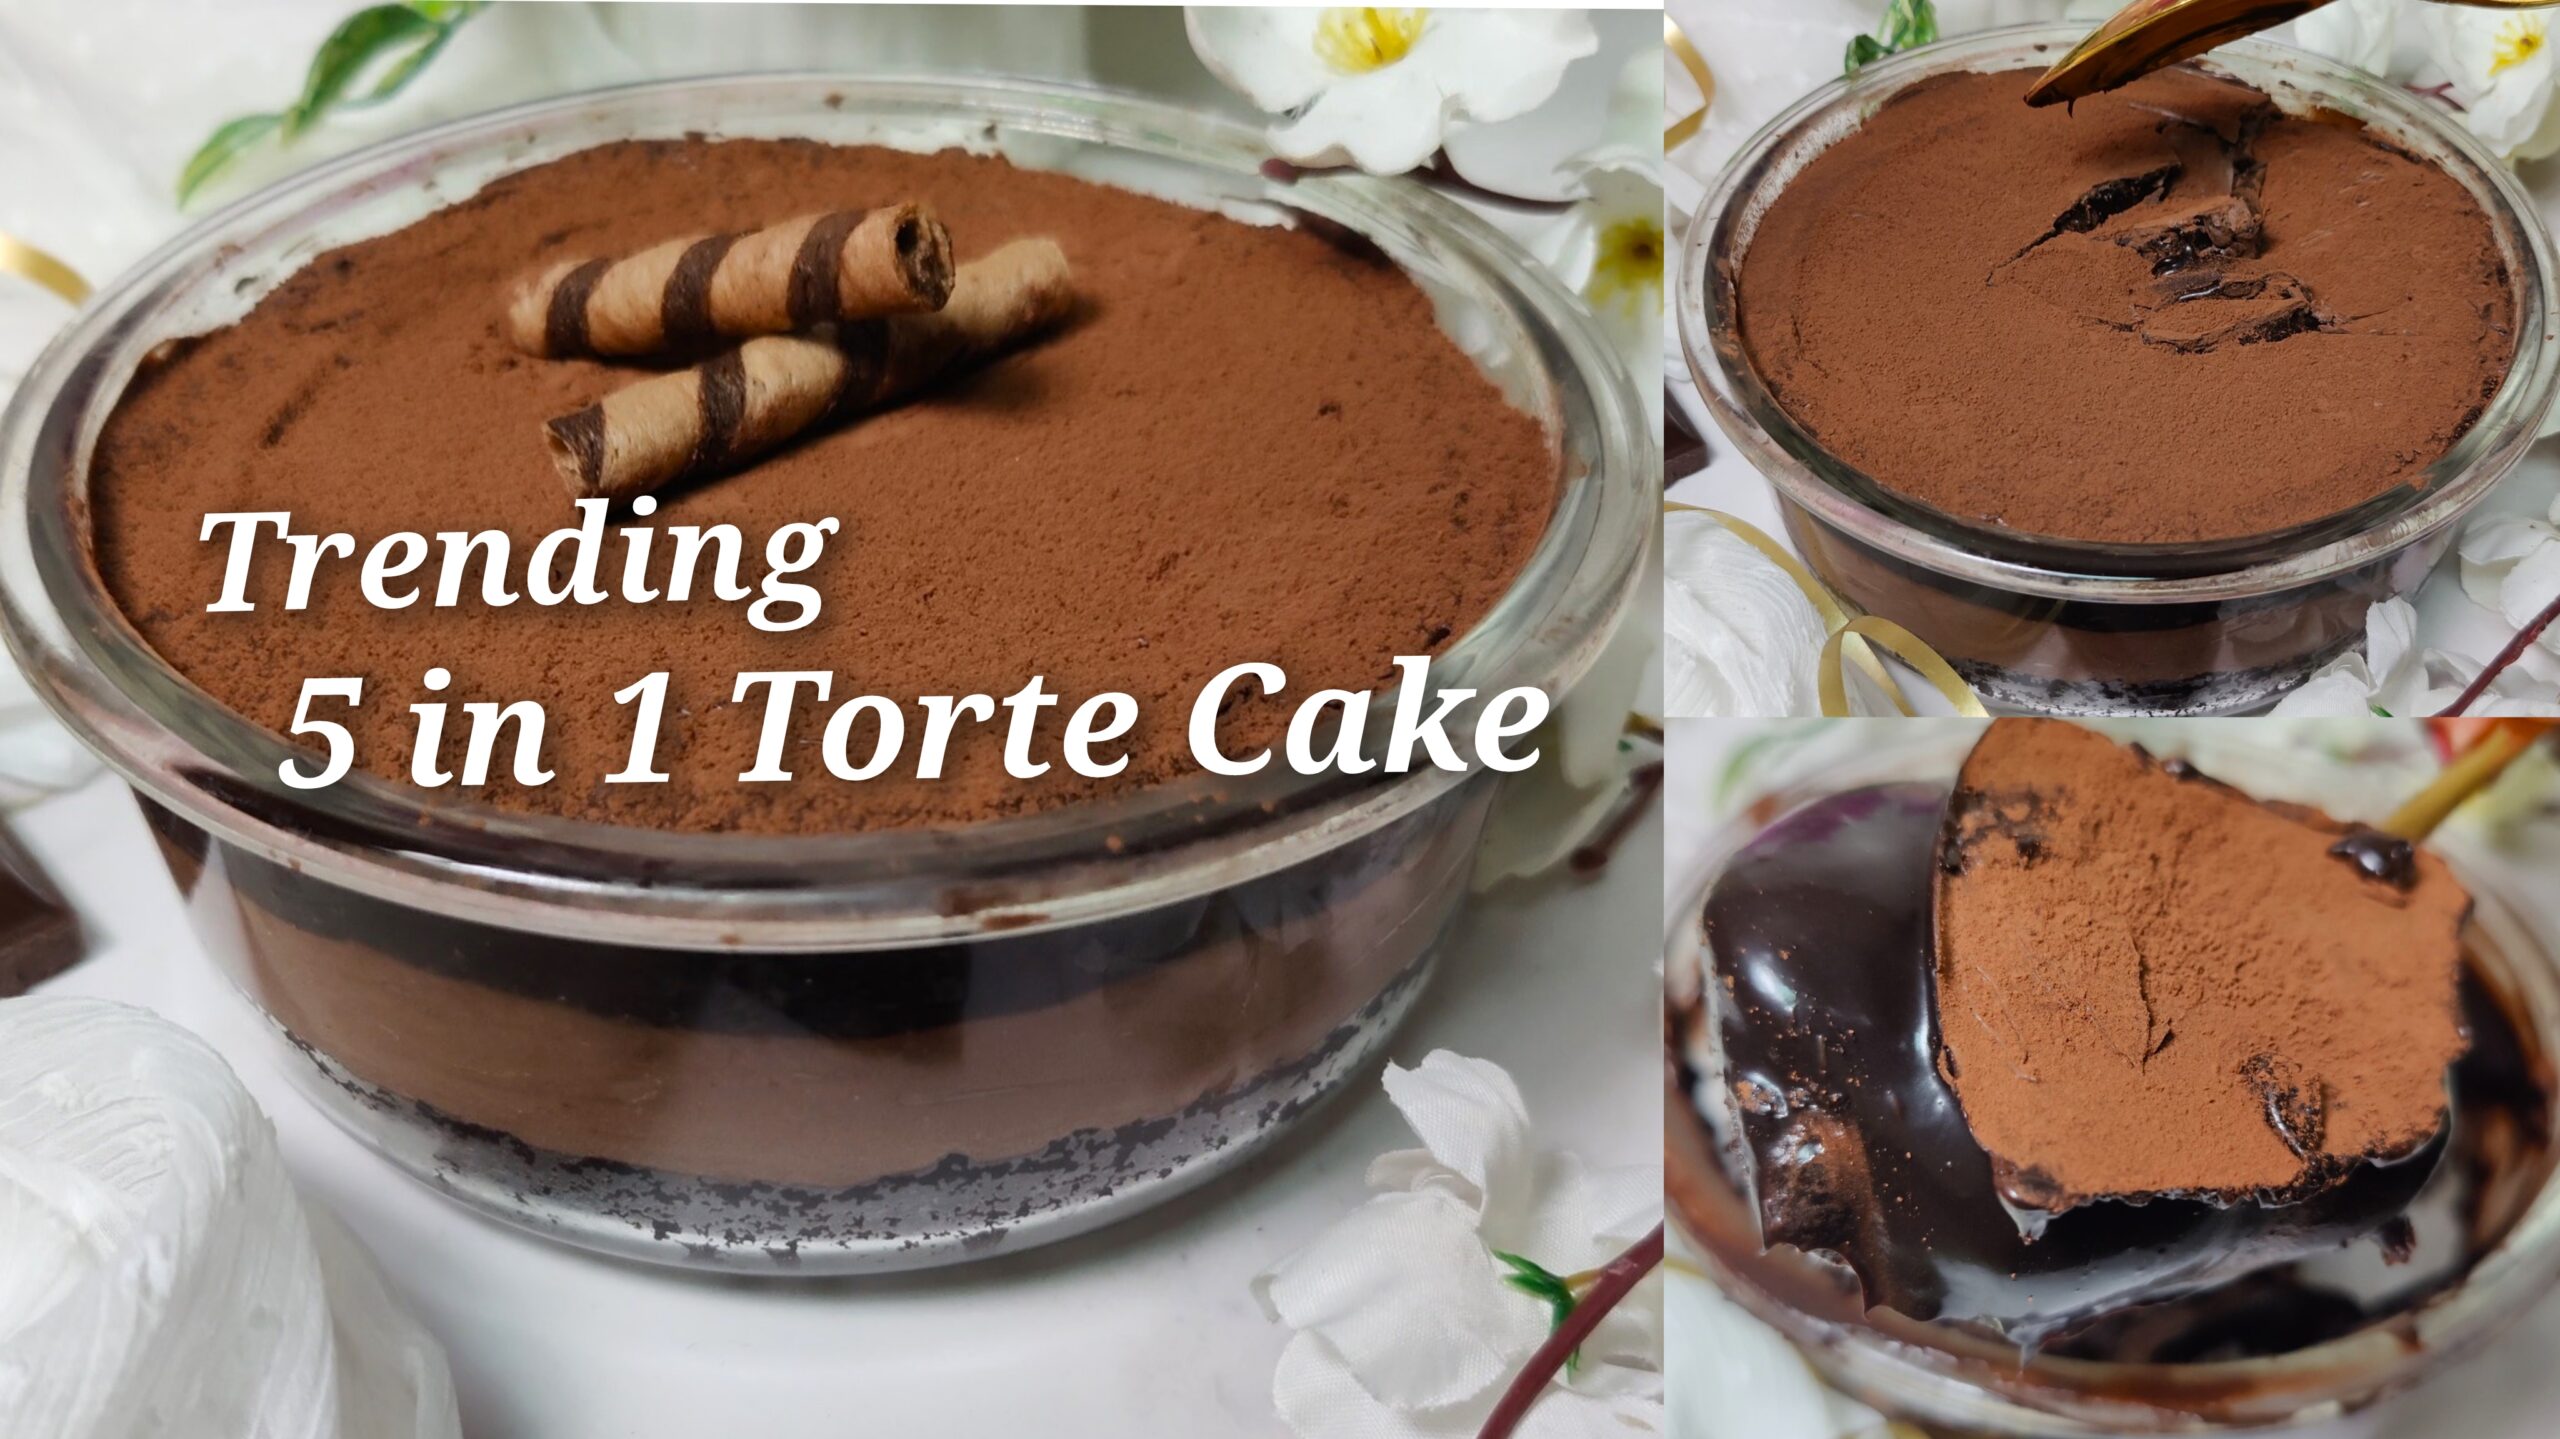 Whipped Cream Dream Cake Recipe | King Arthur Baking